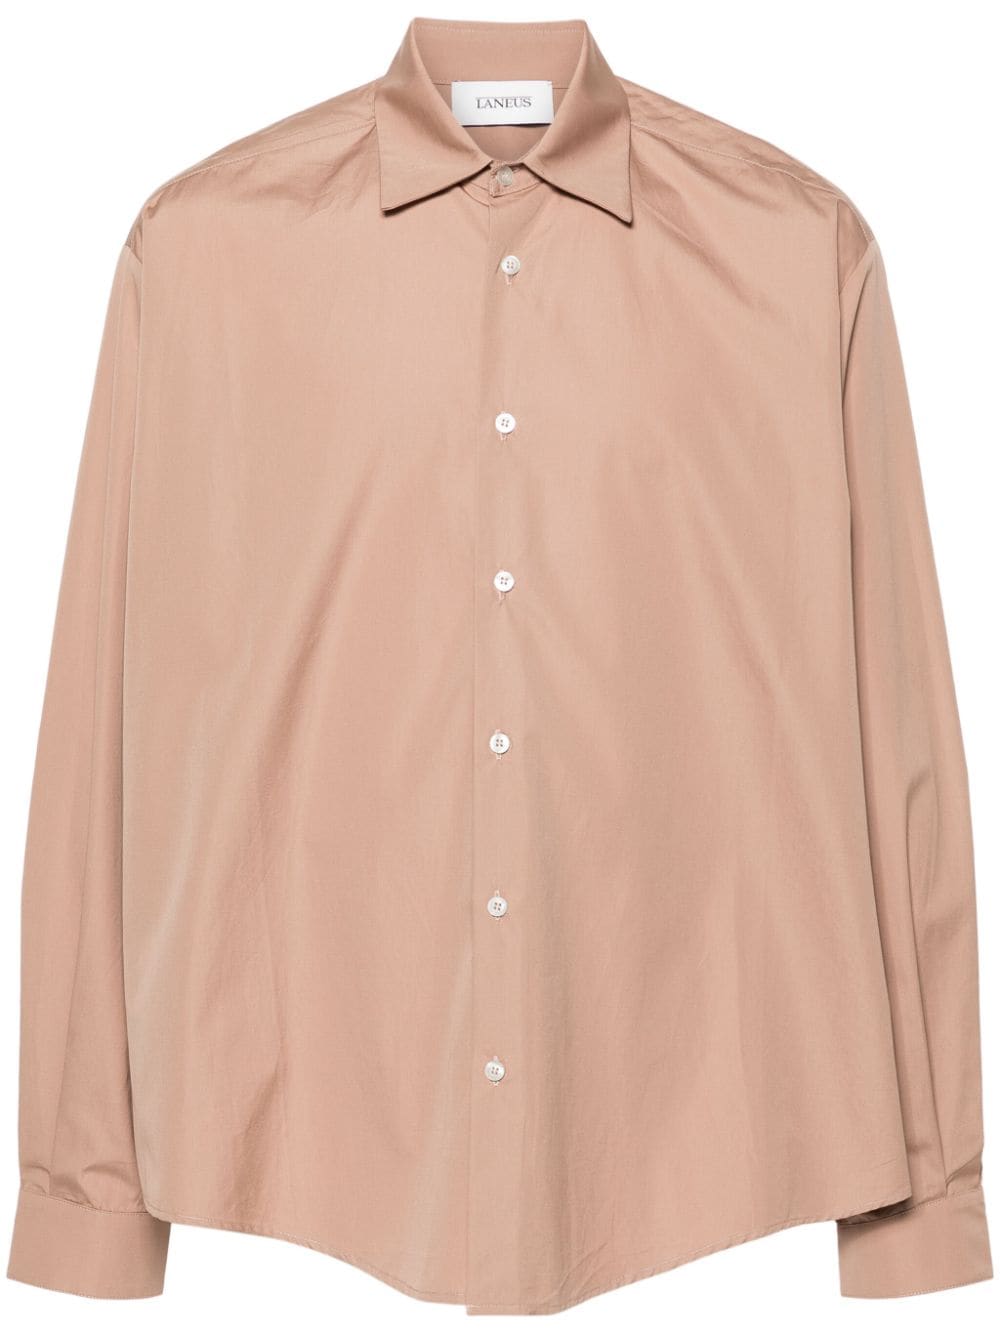 Laneus poplin cotton shirt Beige